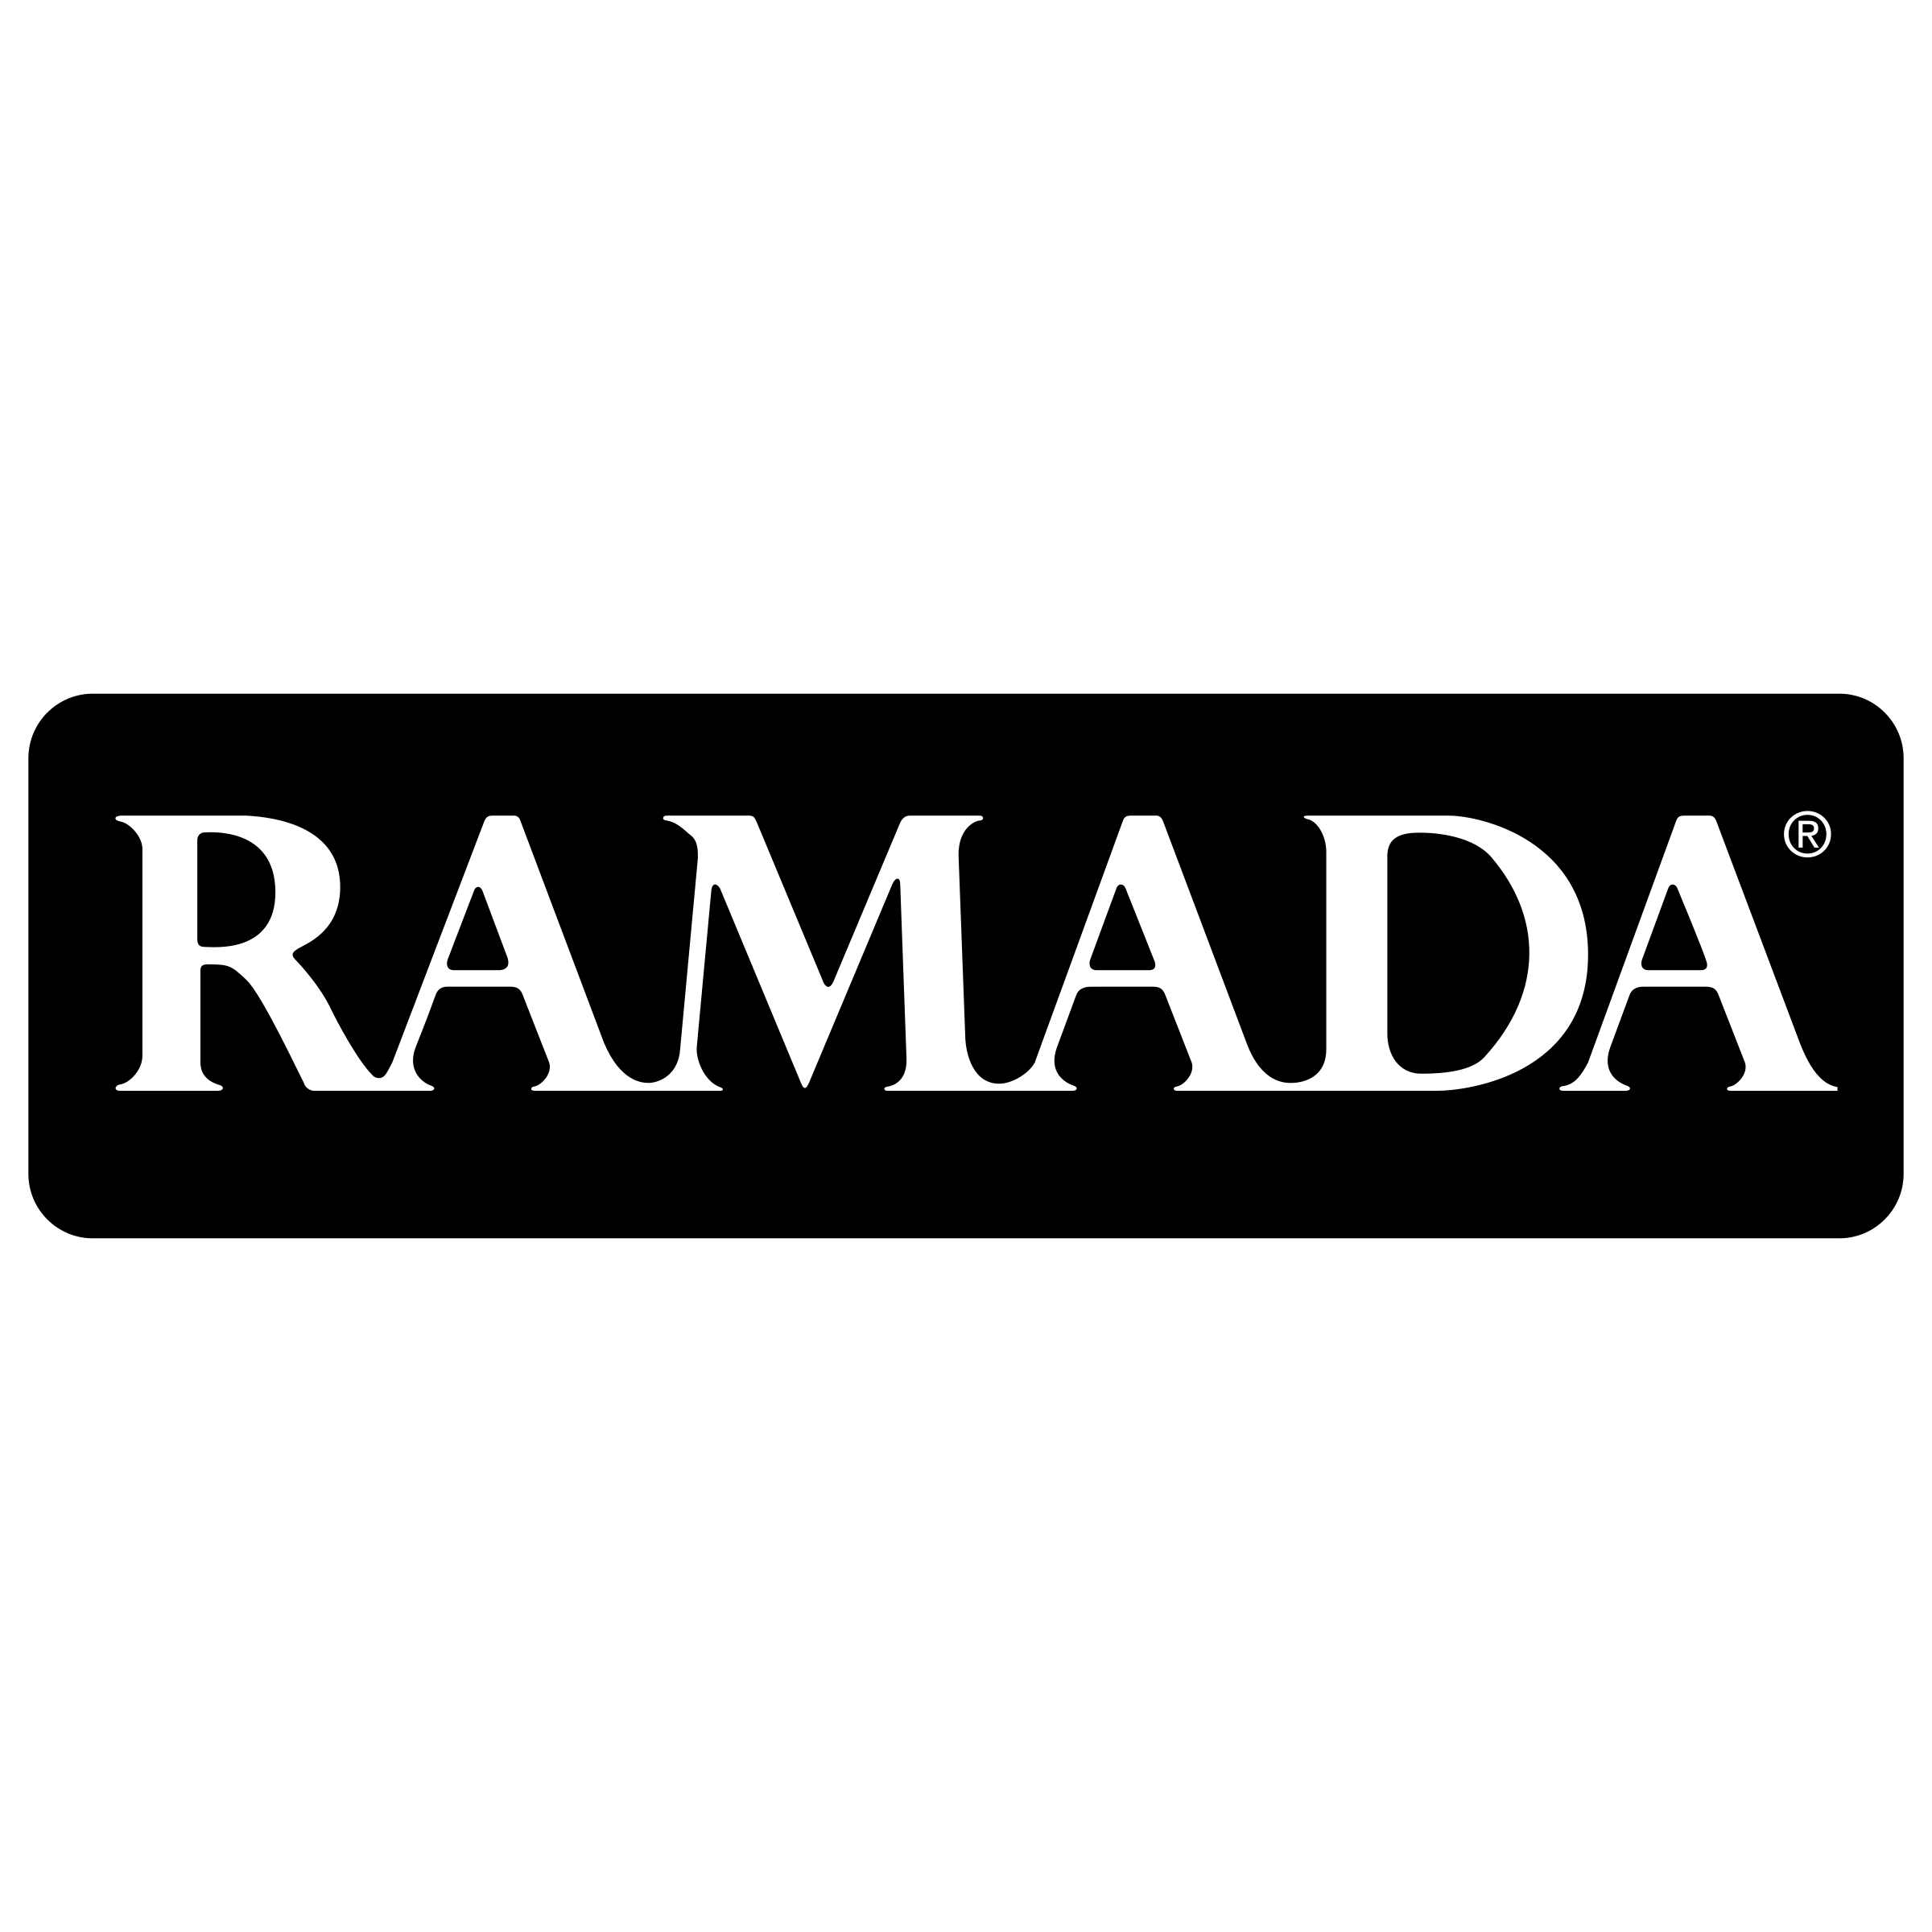 Ramada Logo - Ramada Logo PNG Transparent & SVG Vector